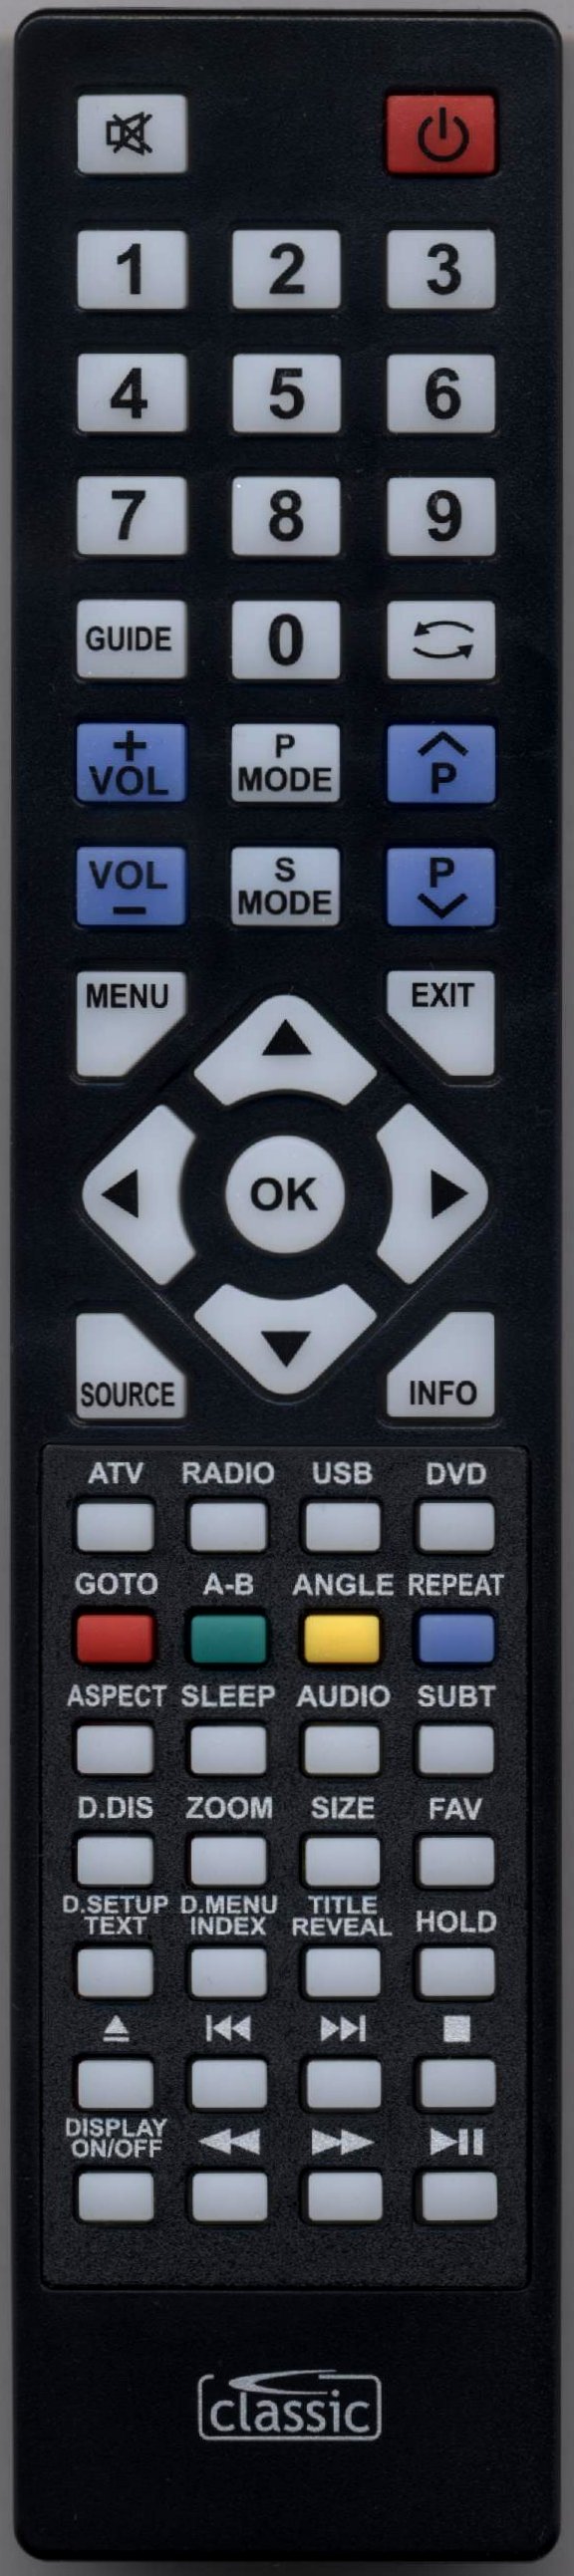 TECHNIKA LCD19-228G Remote Control